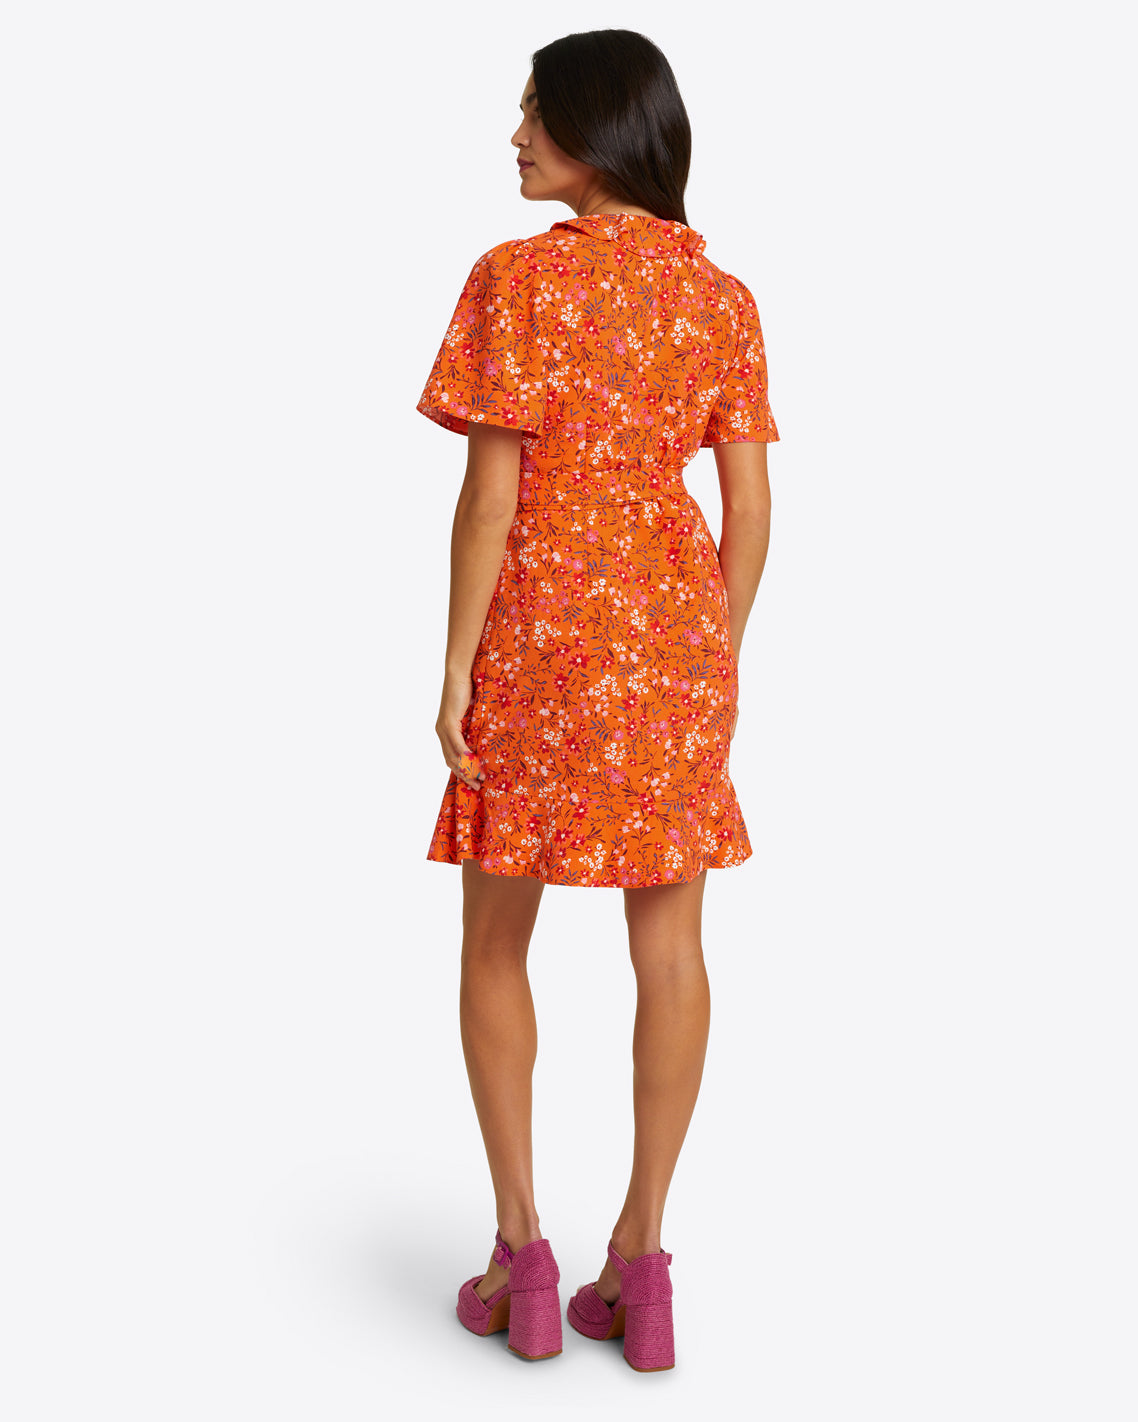 Reba Wrap Dress in Apricot Pansy Floral – Draper James